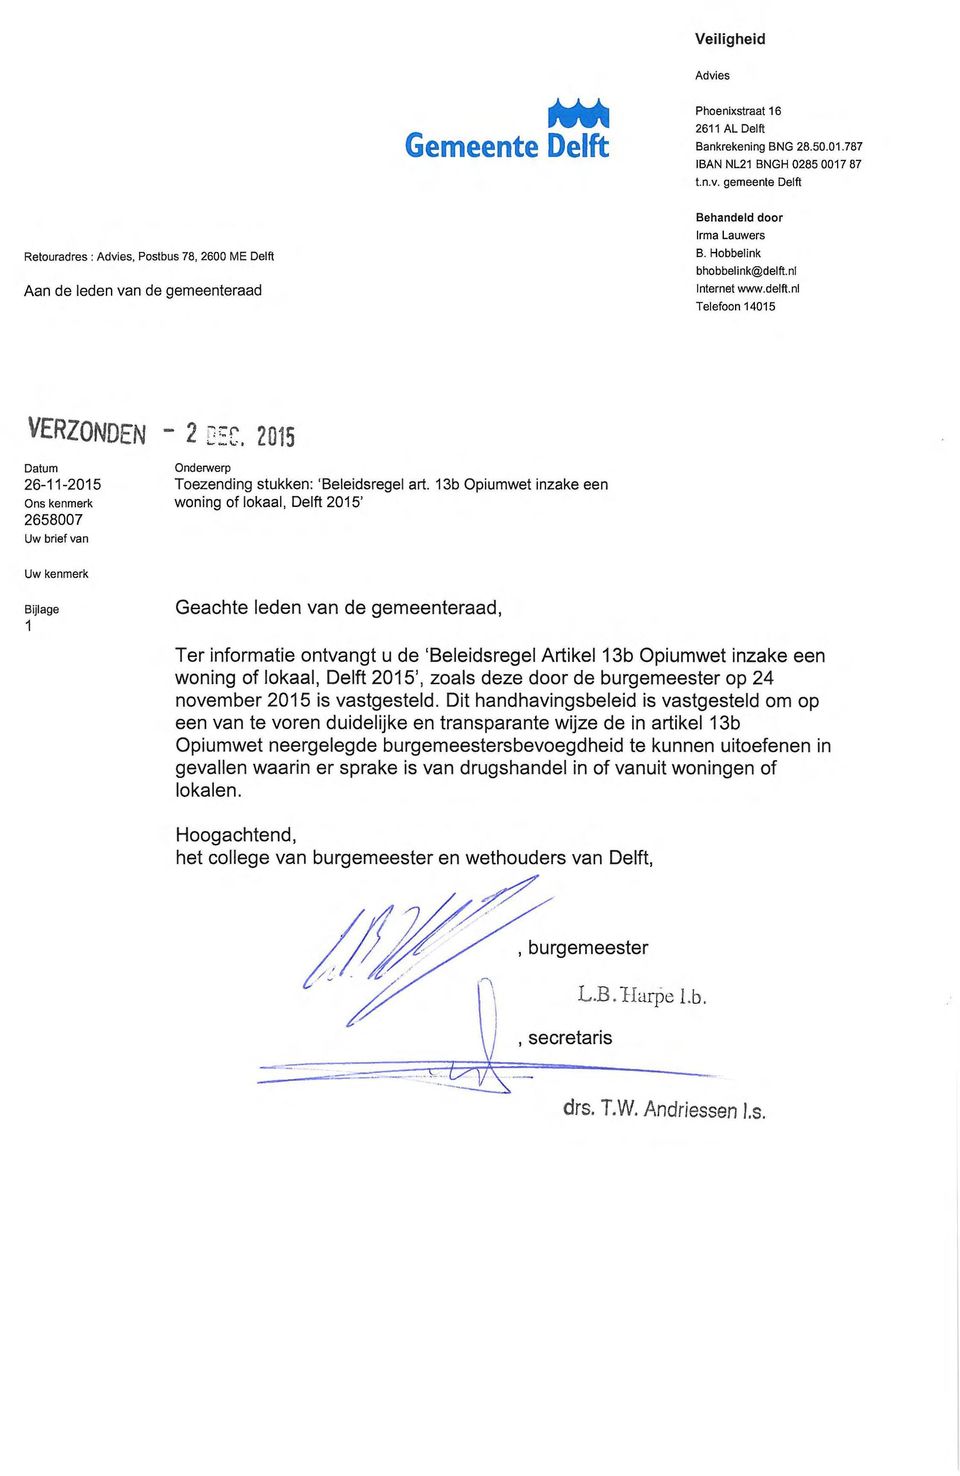 13b Opiumwet inzake een Ons kenmerk woning of lokaal, Delft 2015' 2658007 Uw brief van Uw kenmerk Bijlage 1 Geachte eden van de gemeenteraad, Ter informatie ontvangt u de 'Beleidsregel Artikel 13b